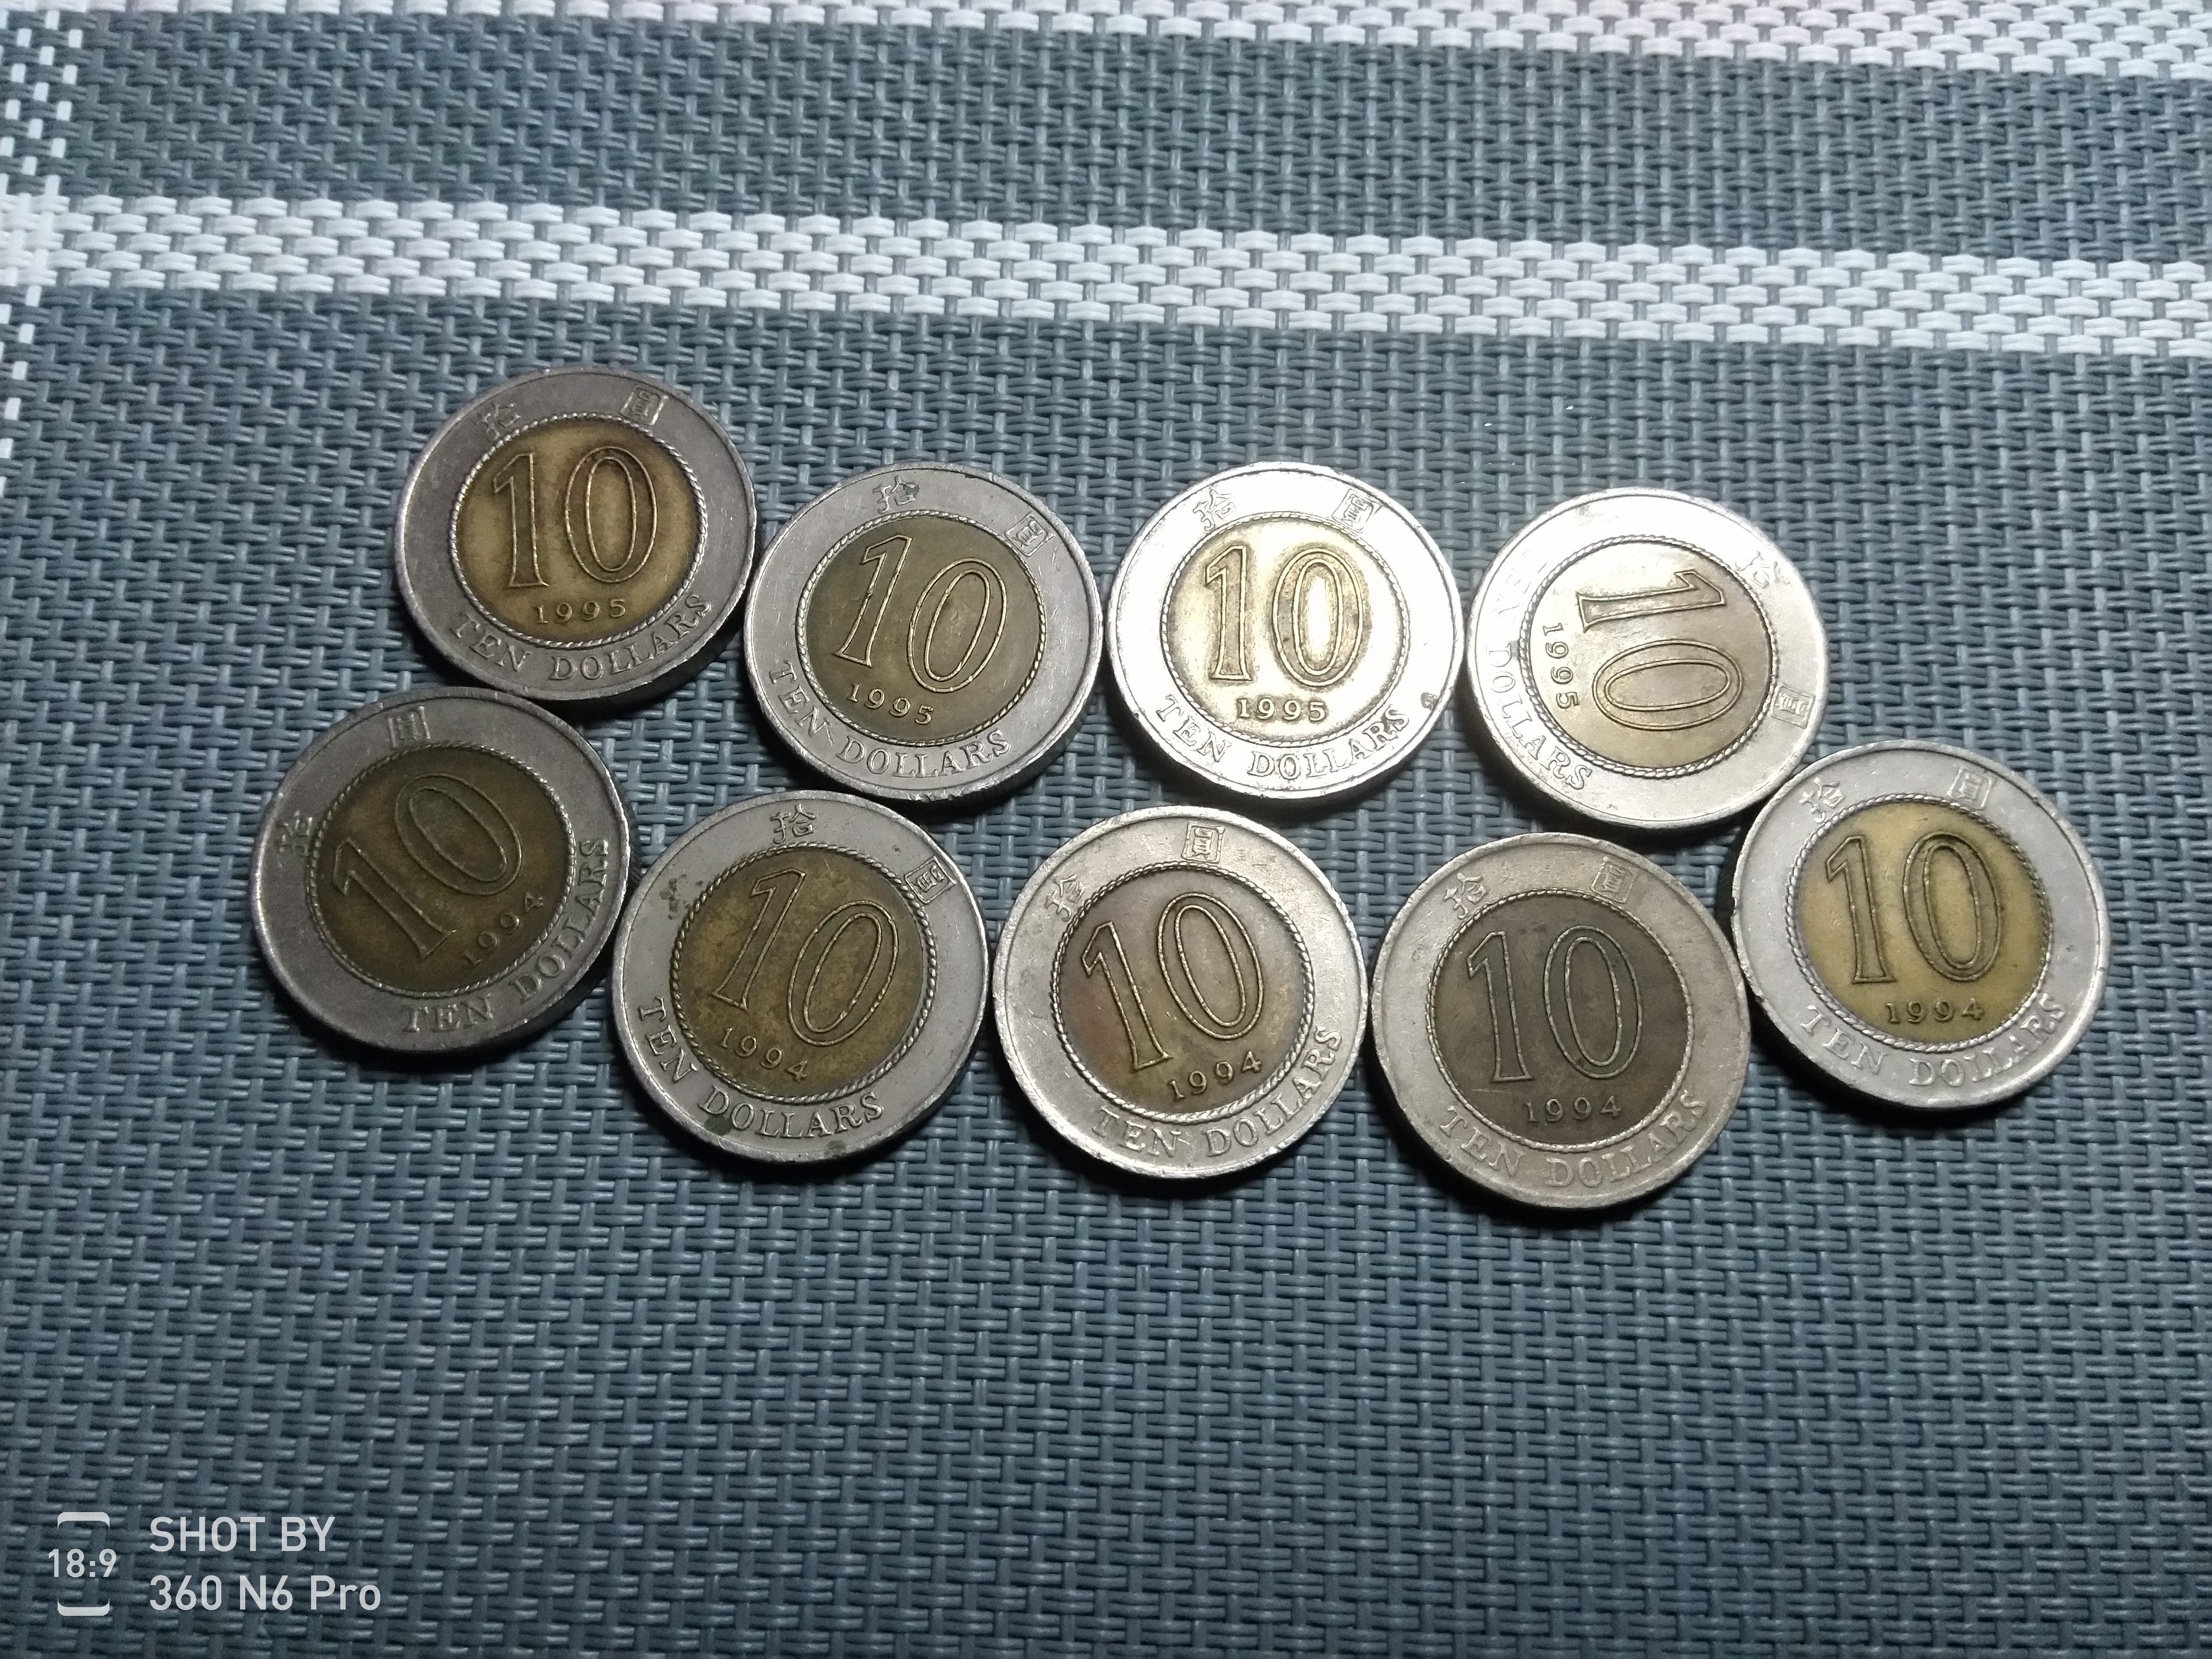 港币硬币十元面值,共9枚,拍前